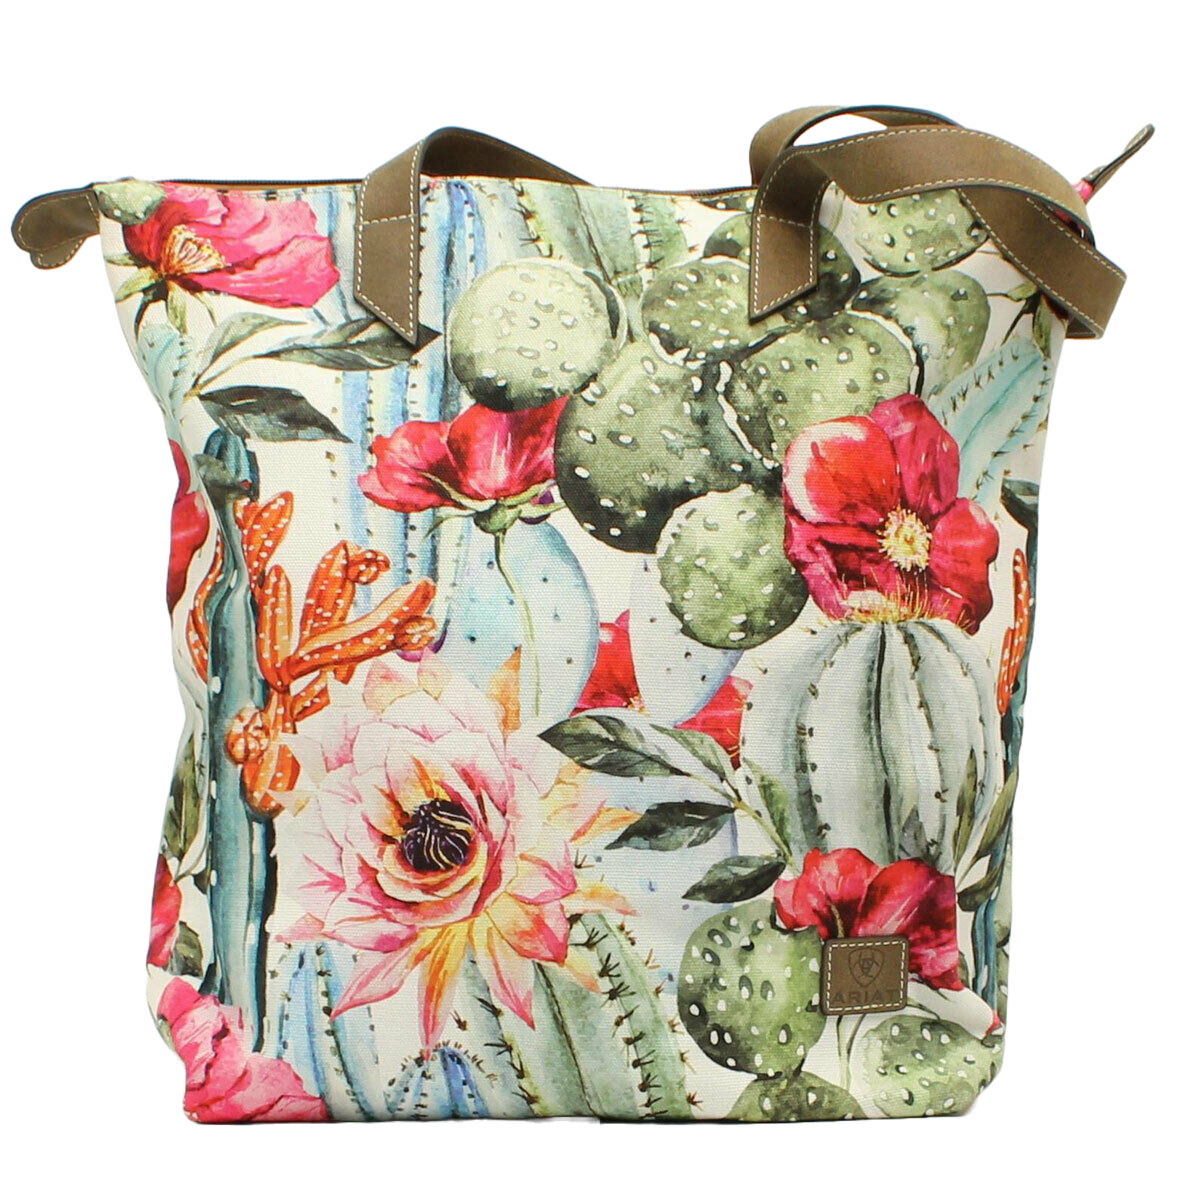 Ariat Ladies Cactus/Floral Multicolored Tote Bag A770000097